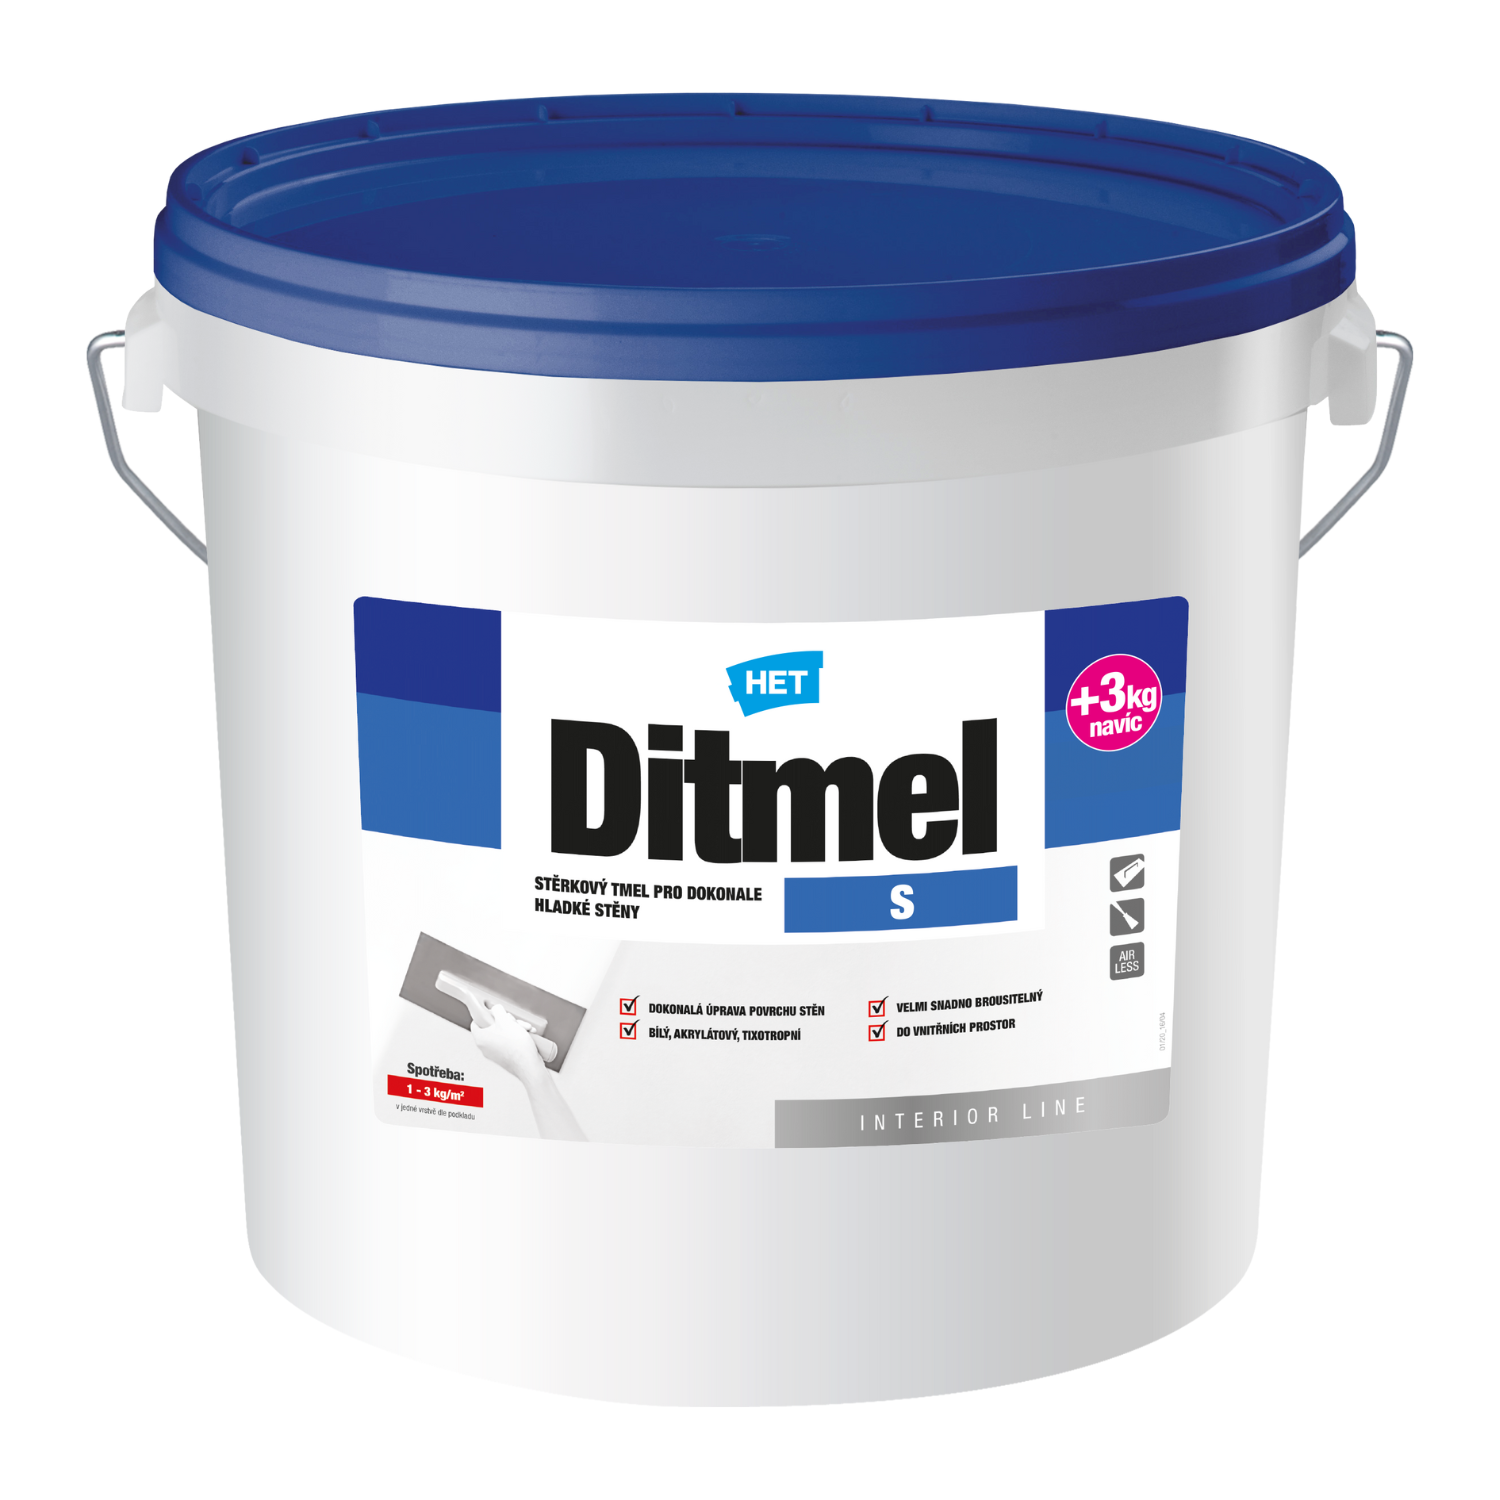 HET Ditmel S stierkový tmel na plošné nanášanie v interiéroch 7 kg